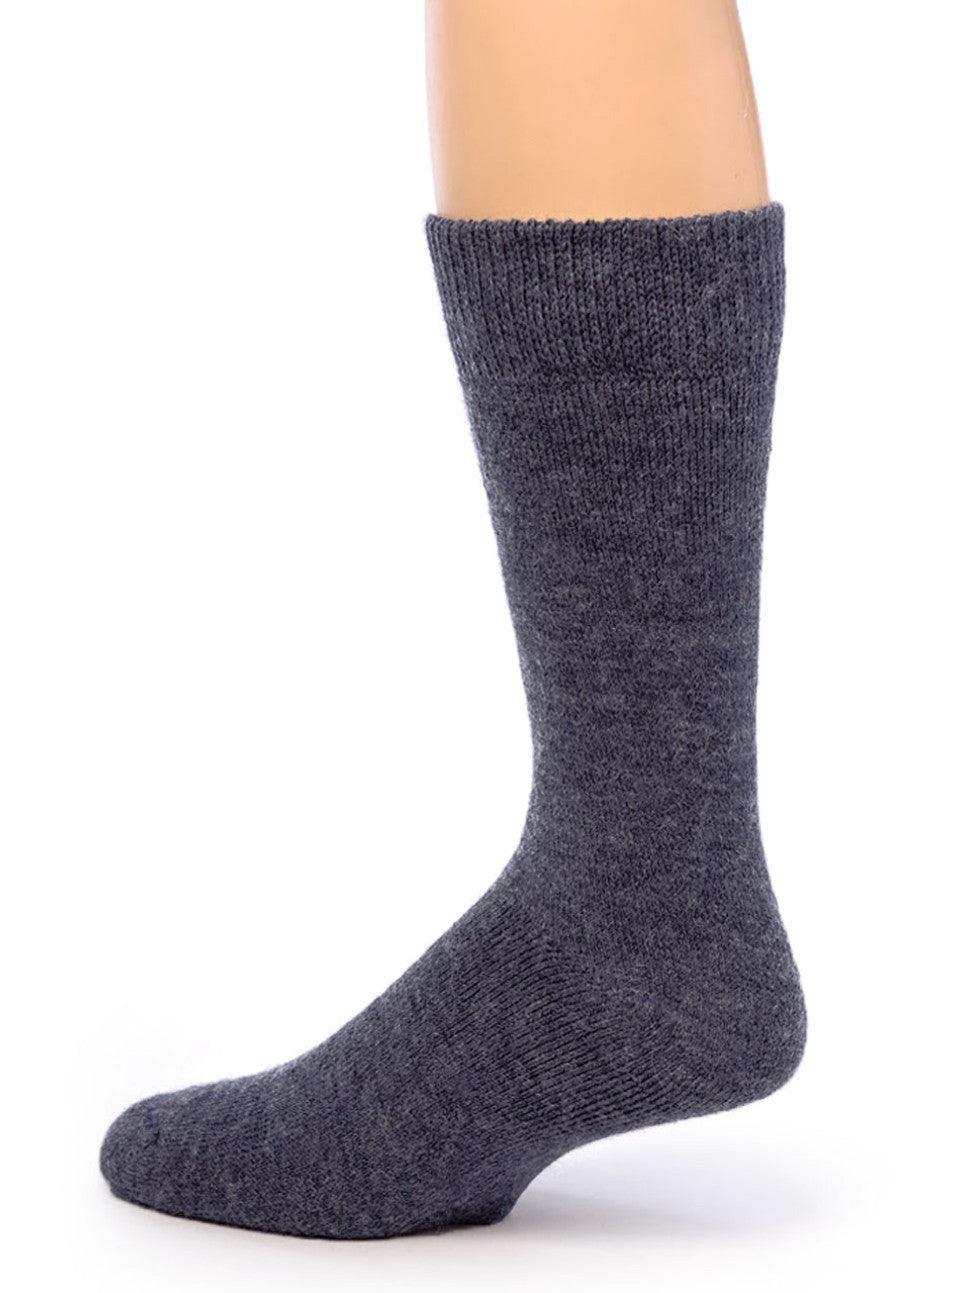 Best Alpaca Wool Ankle Socks - Warrior Alpaca Socks